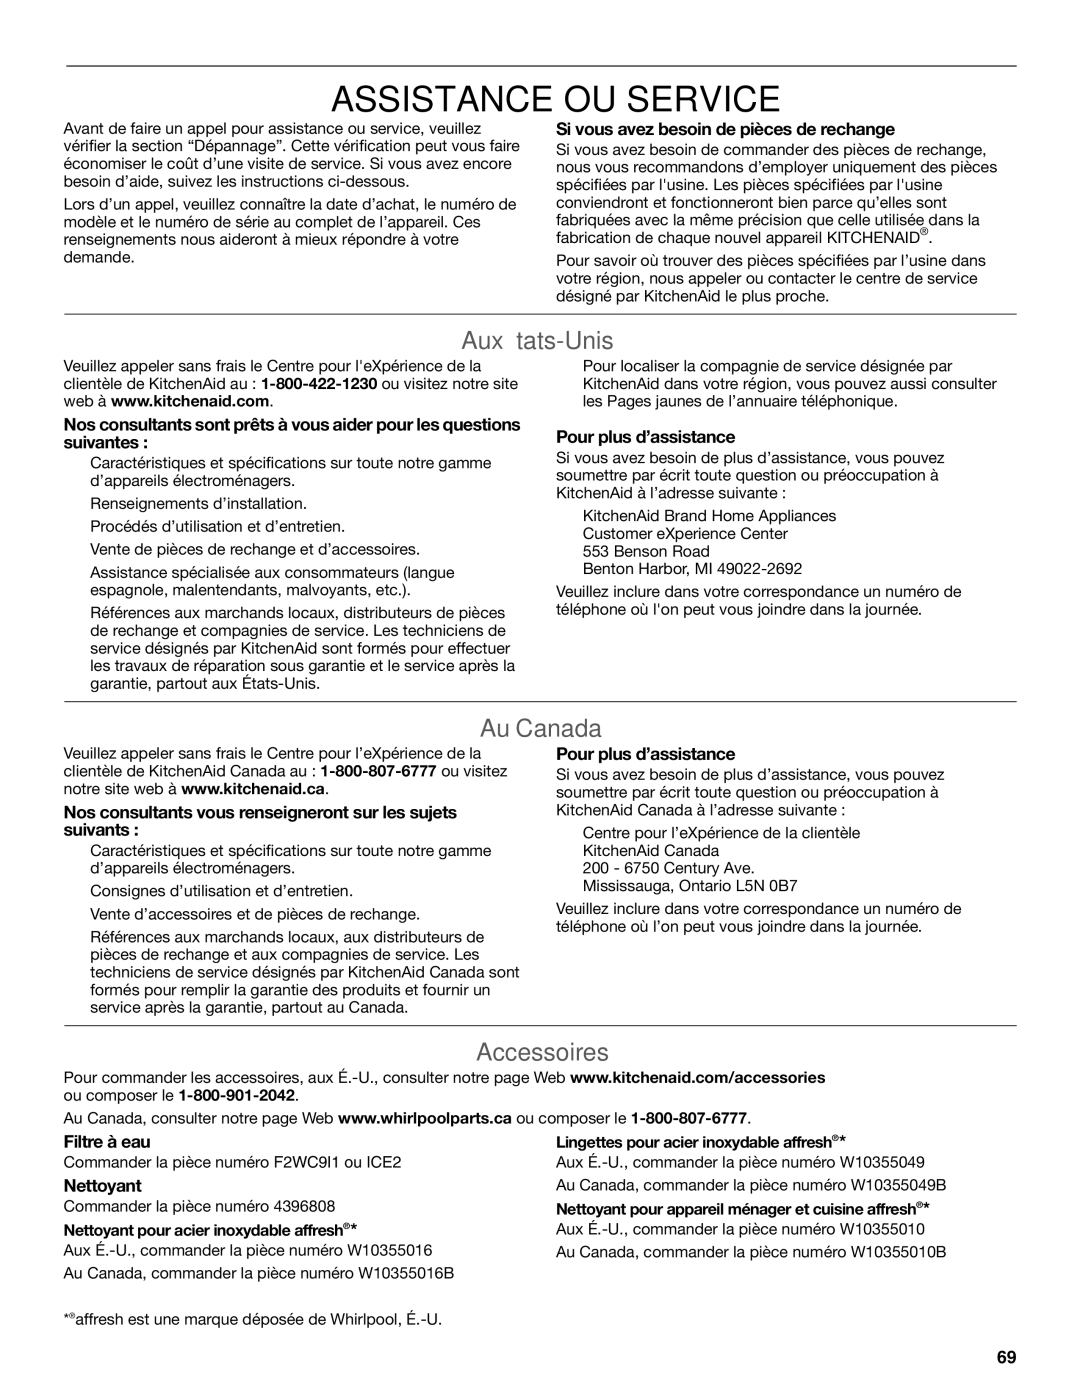 KitchenAid W10520792B manual Assistance OU Service, Aux États-Unis, Au Canada, Accessoires 